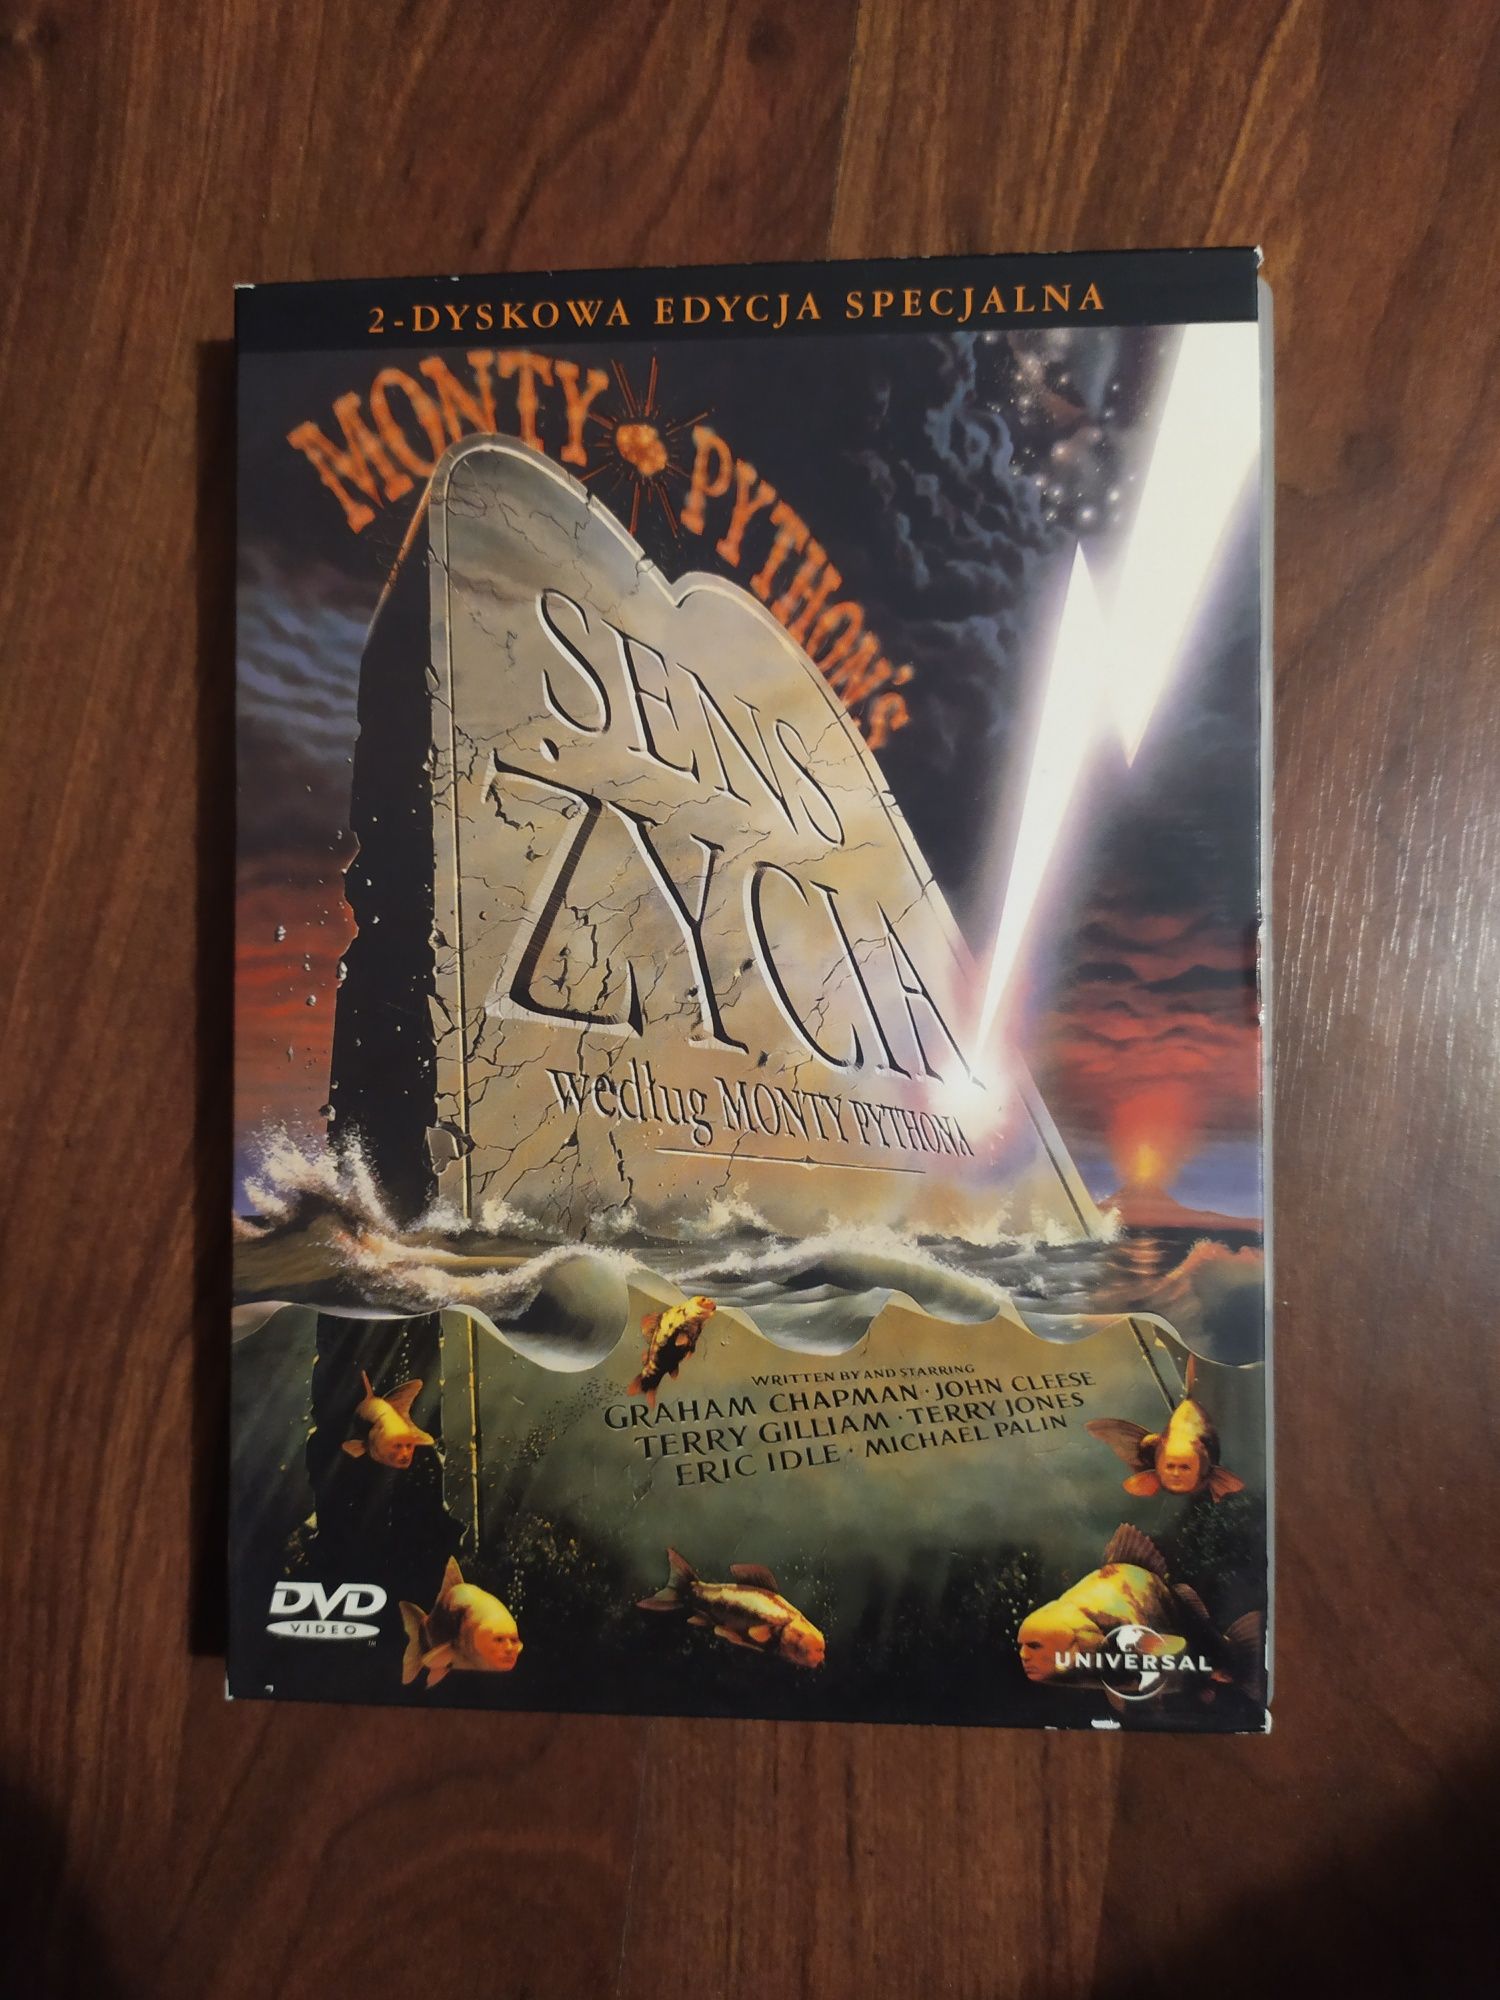 Sens życia według Monty Pythona, DVD